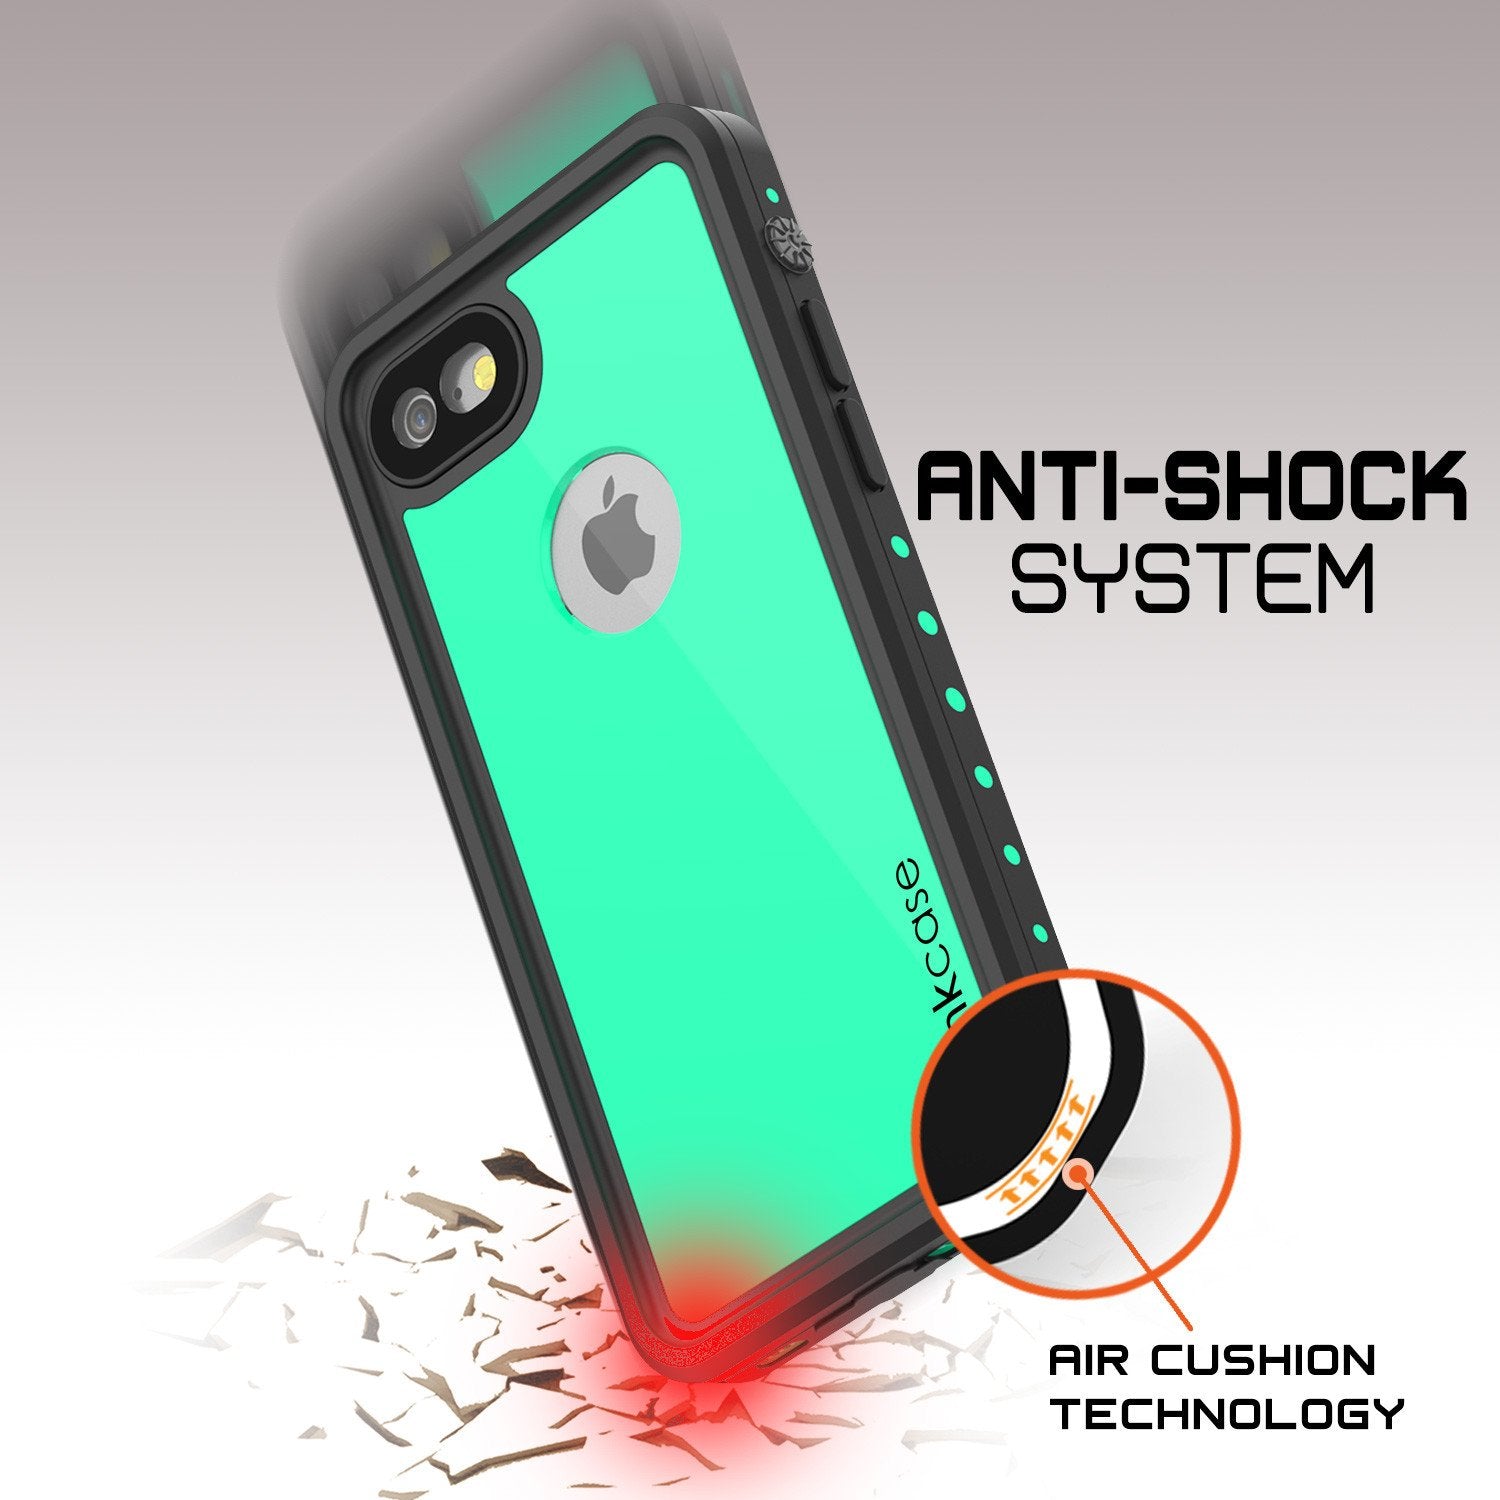 iPhone 7 Waterproof IP68 Case, Punkcase [Teal] [StudStar Series] [Slim Fit] [Dirtproof] [Snowproof]